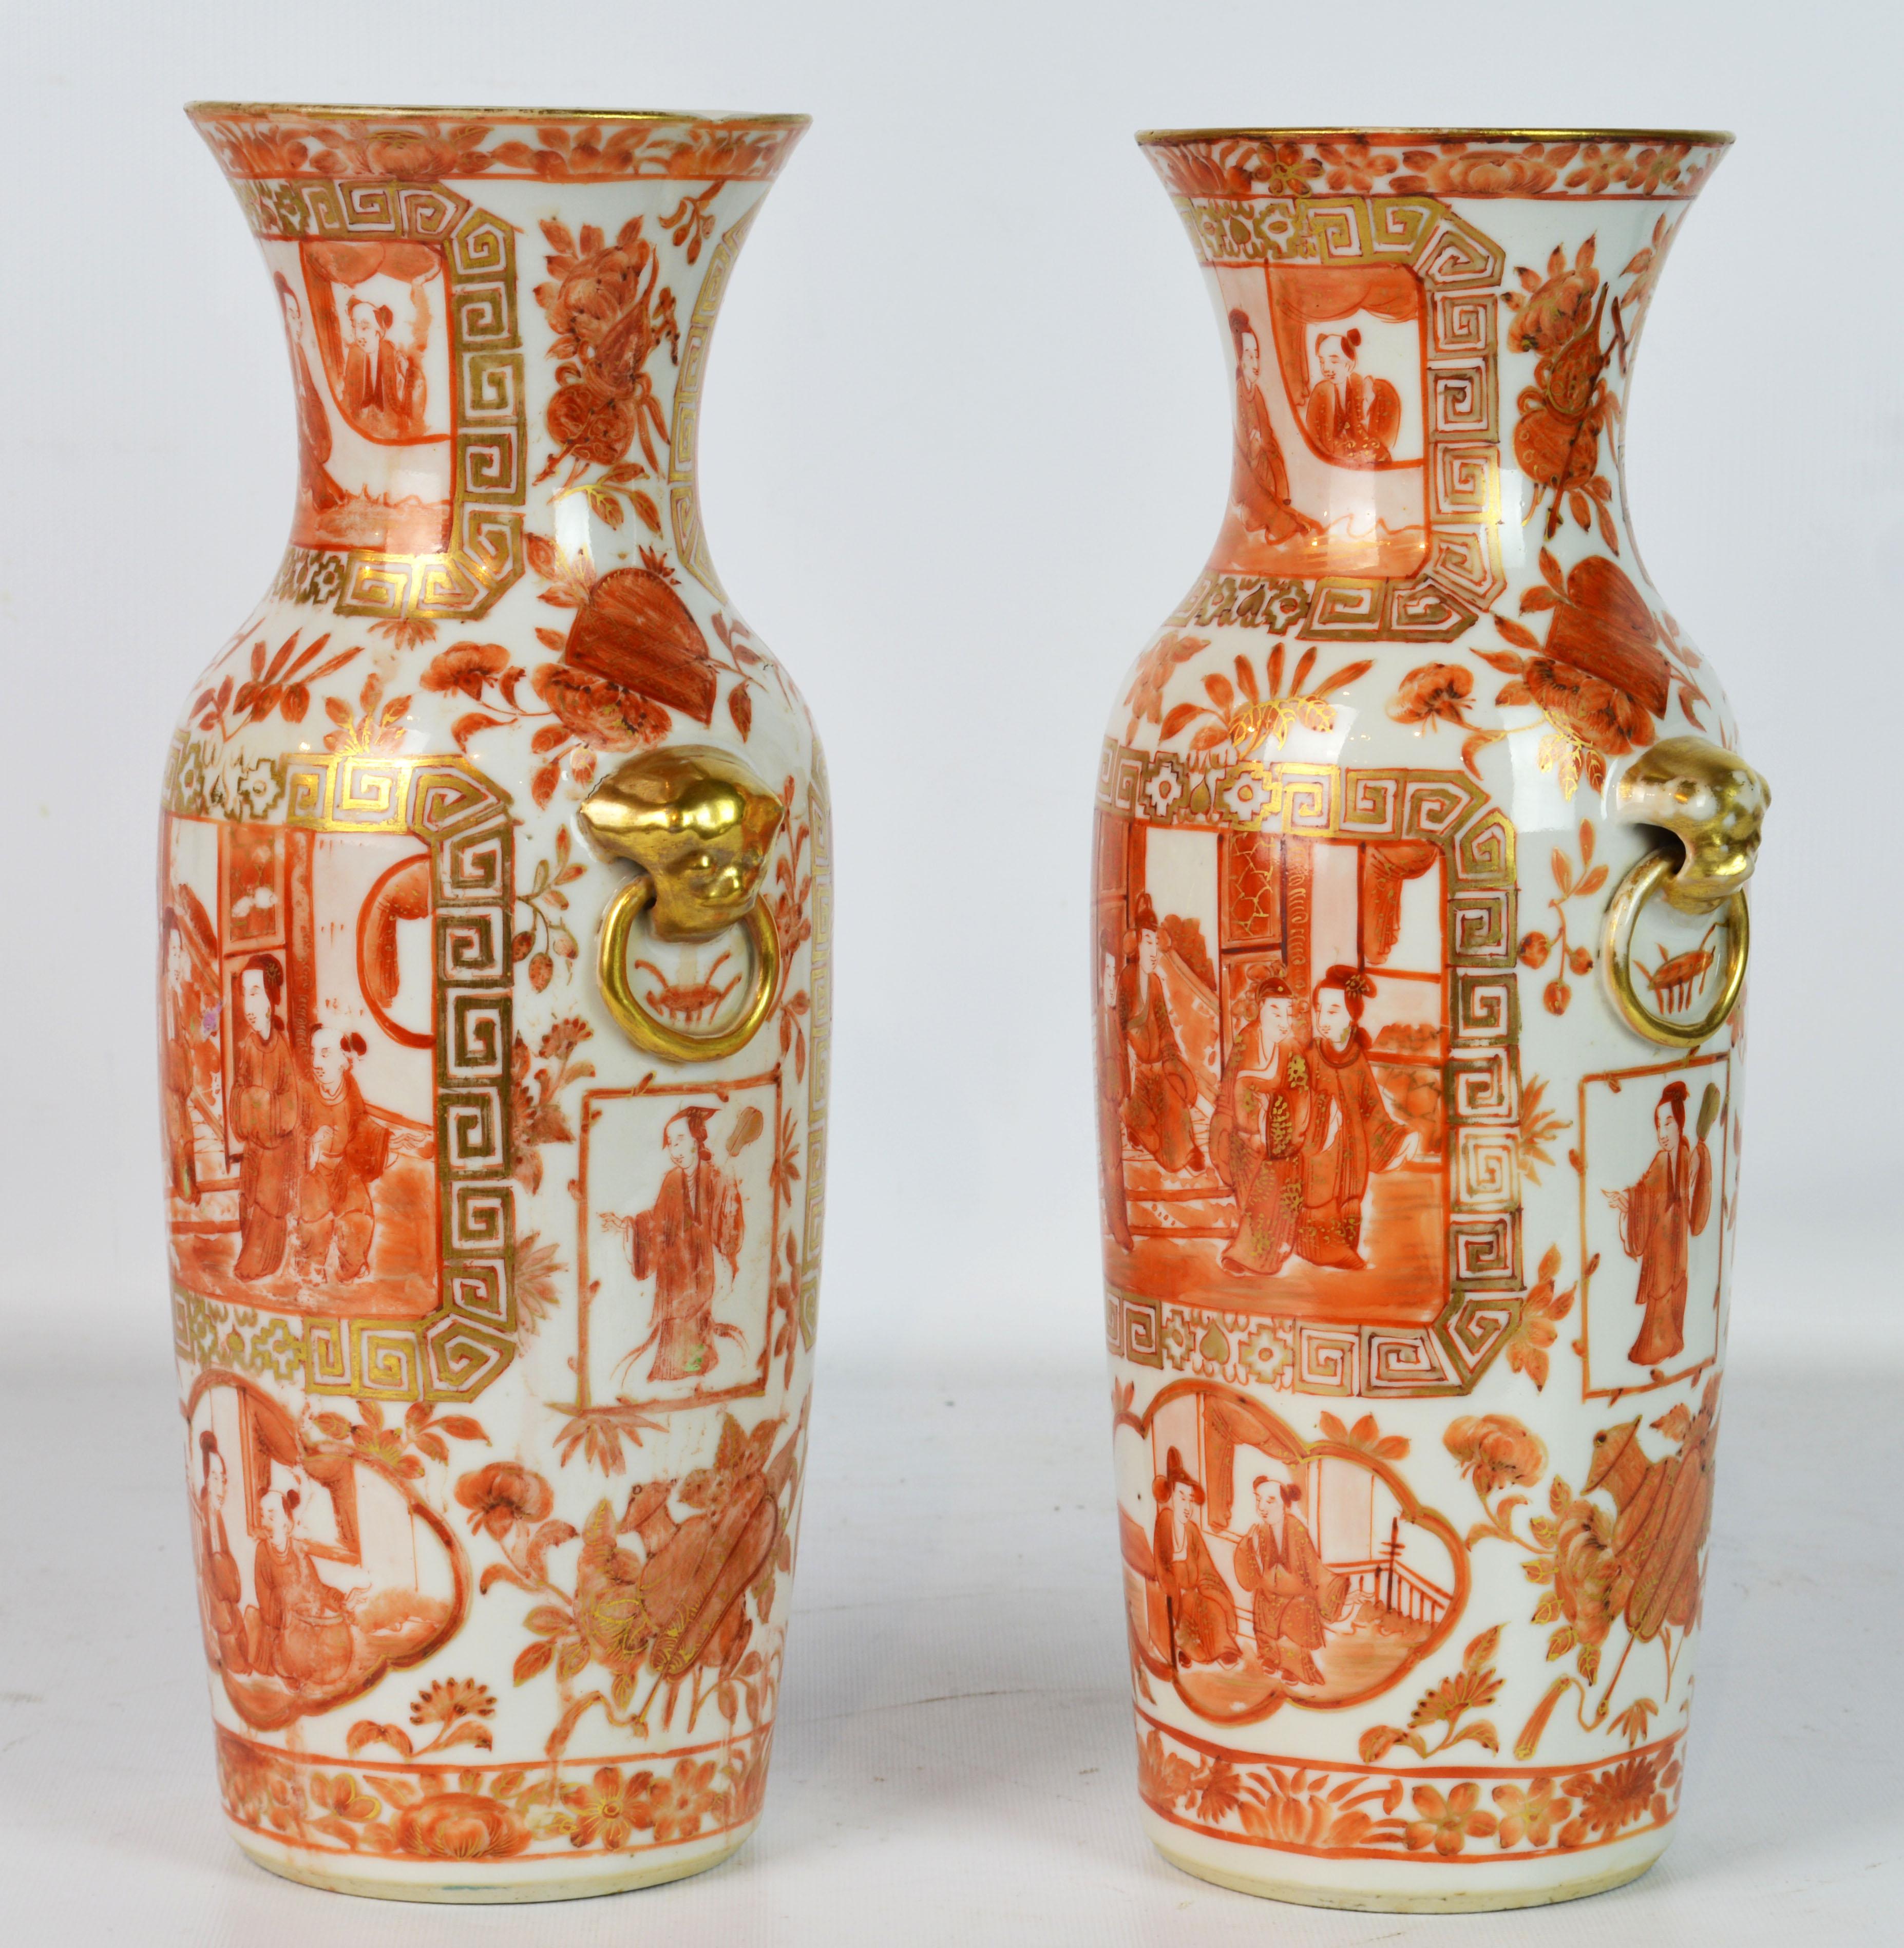 Dieses feine Paar chinesischer Exportvasen hat einen weißen Grund mit reichem orangefarbenem und vergoldetem Emaildekor, das häusliche Szenen, Blumen und Blätterwerk zeigt. Sie stammen wahrscheinlich aus der Daoguang-Dynastie, etwa um 1840.